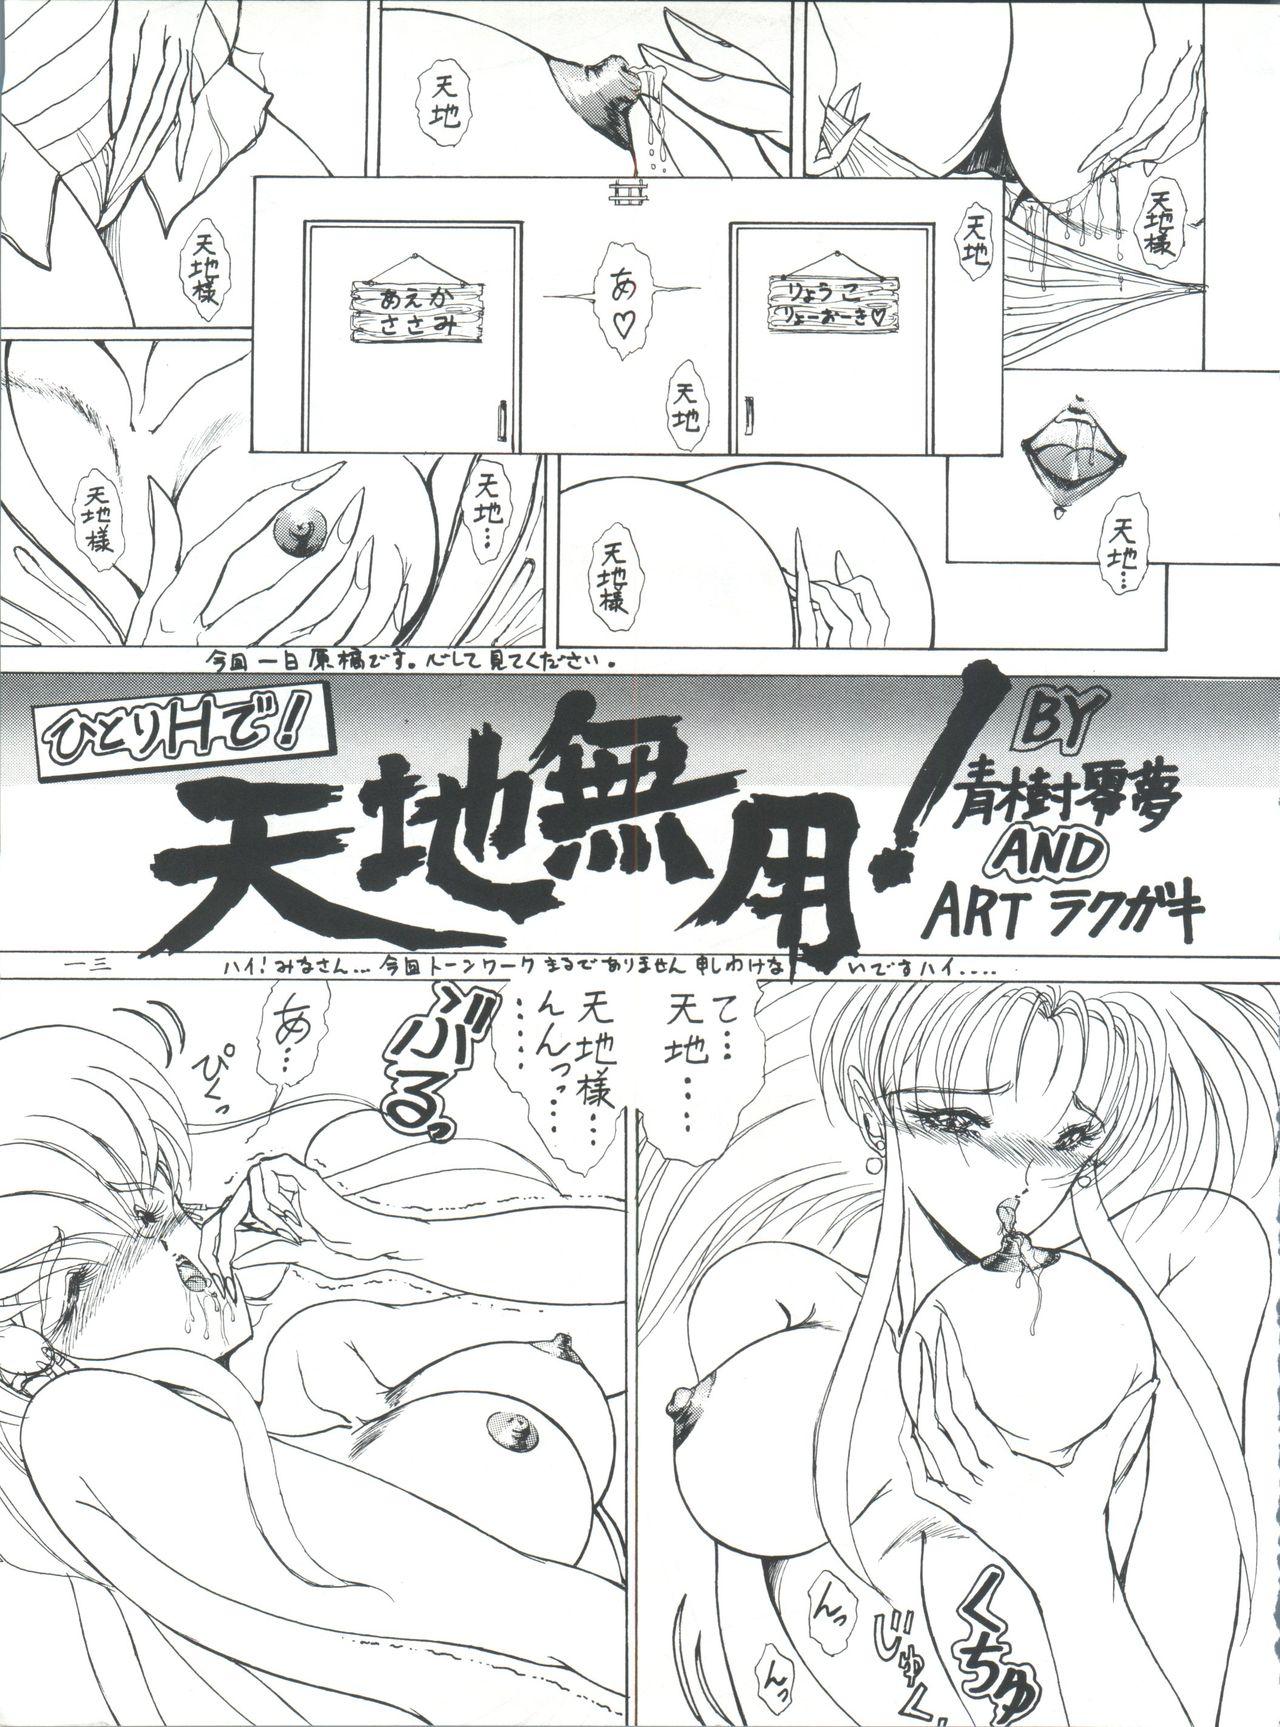 Yanks Featured Plus-Y Vol. 11 Konpeki no Tsukiyo - Tenchi muyo Mexicana - Page 13